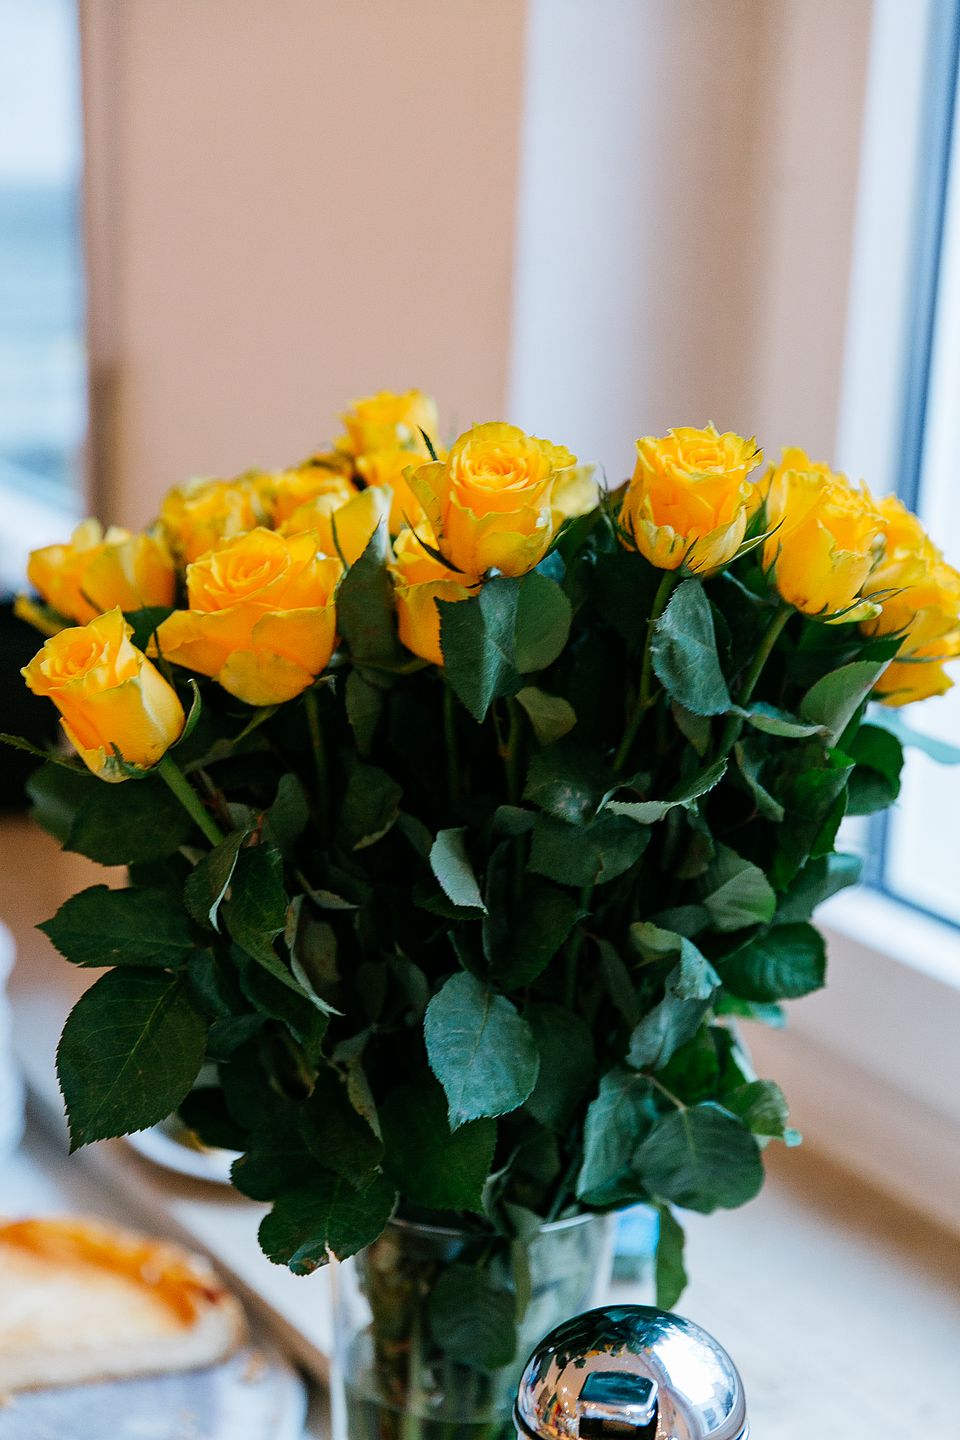 Ein Strauß gelber Rosen in einer Vase.